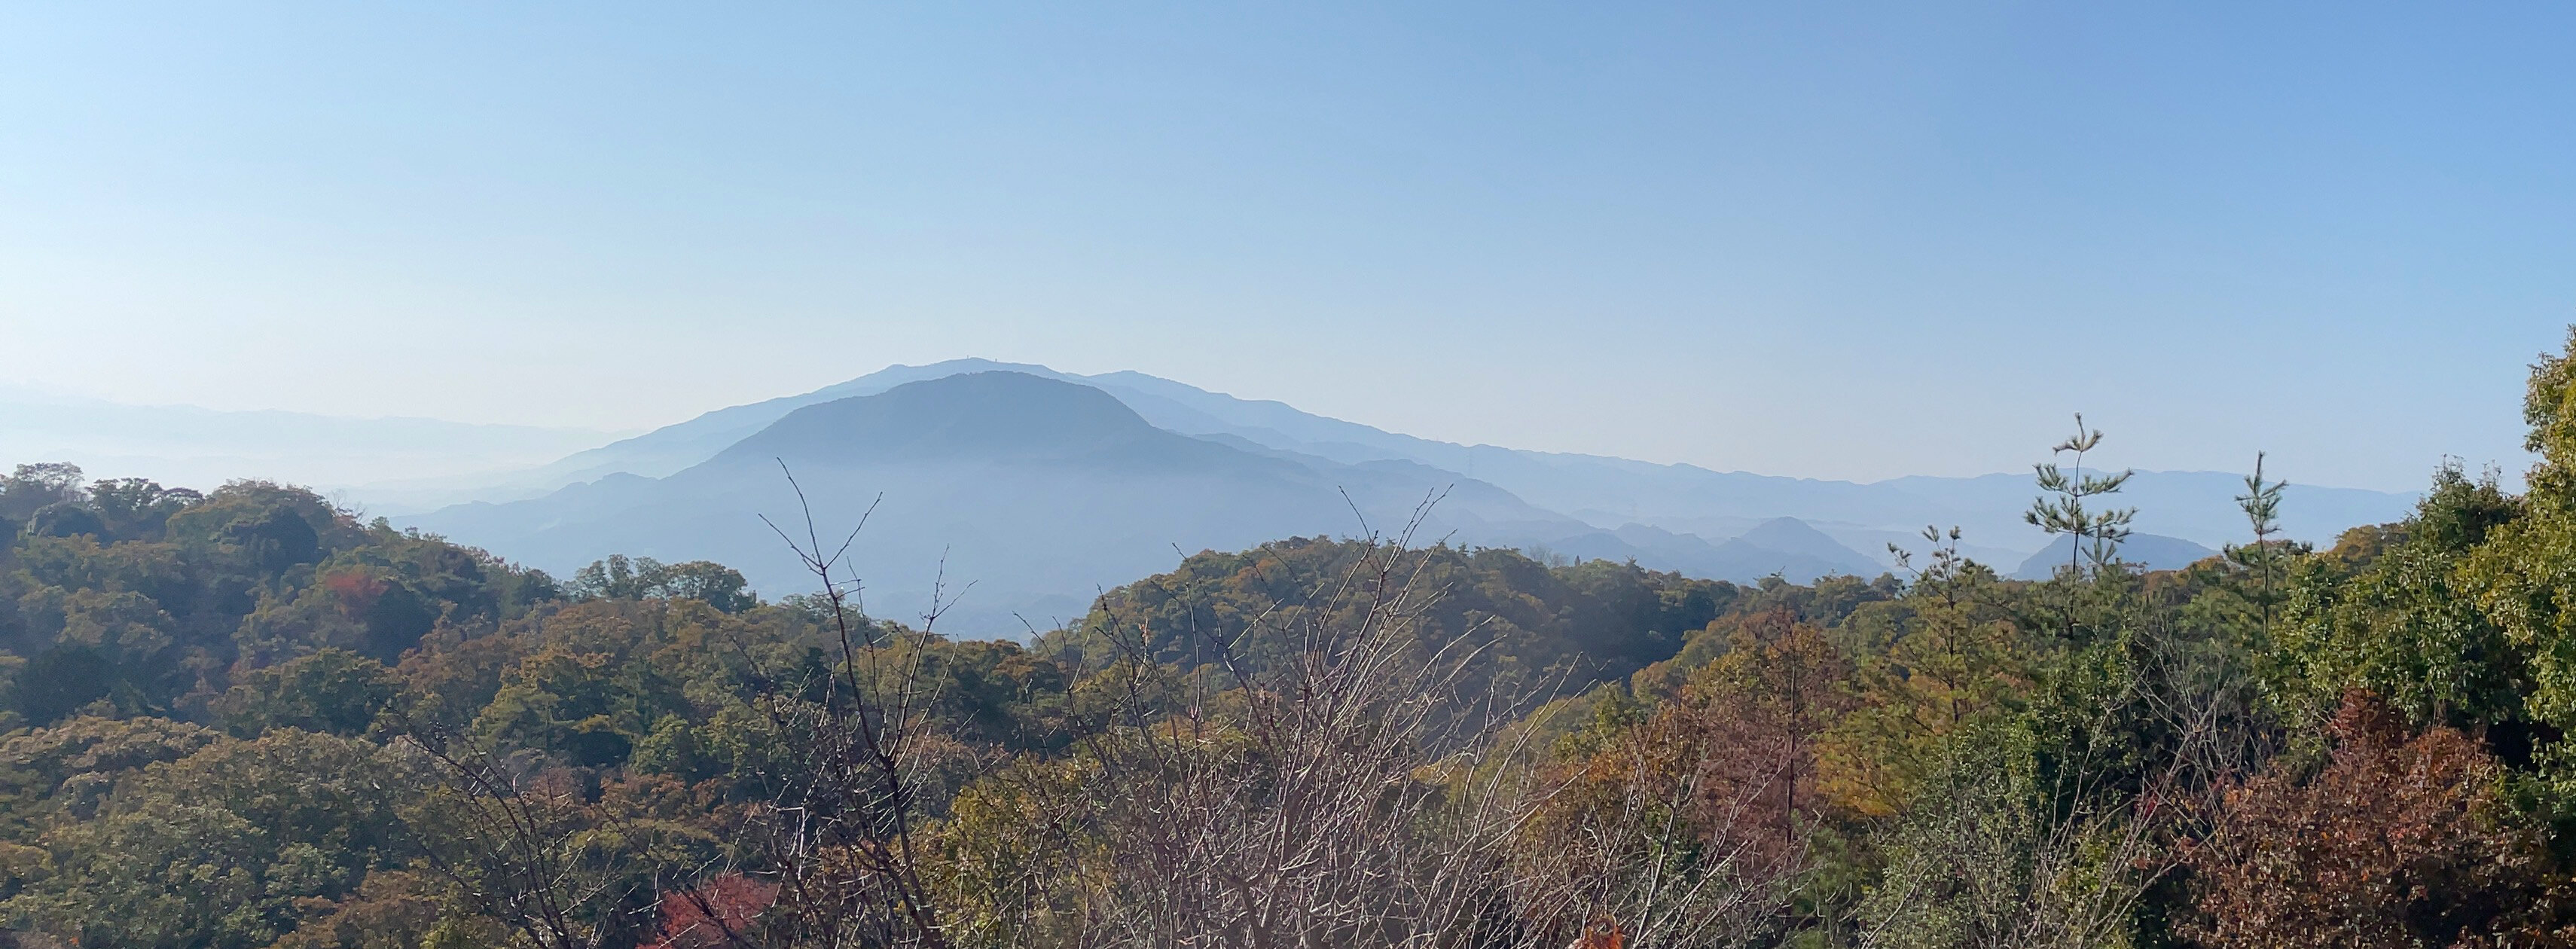 明神山から見た葛城修験の山々.JPG